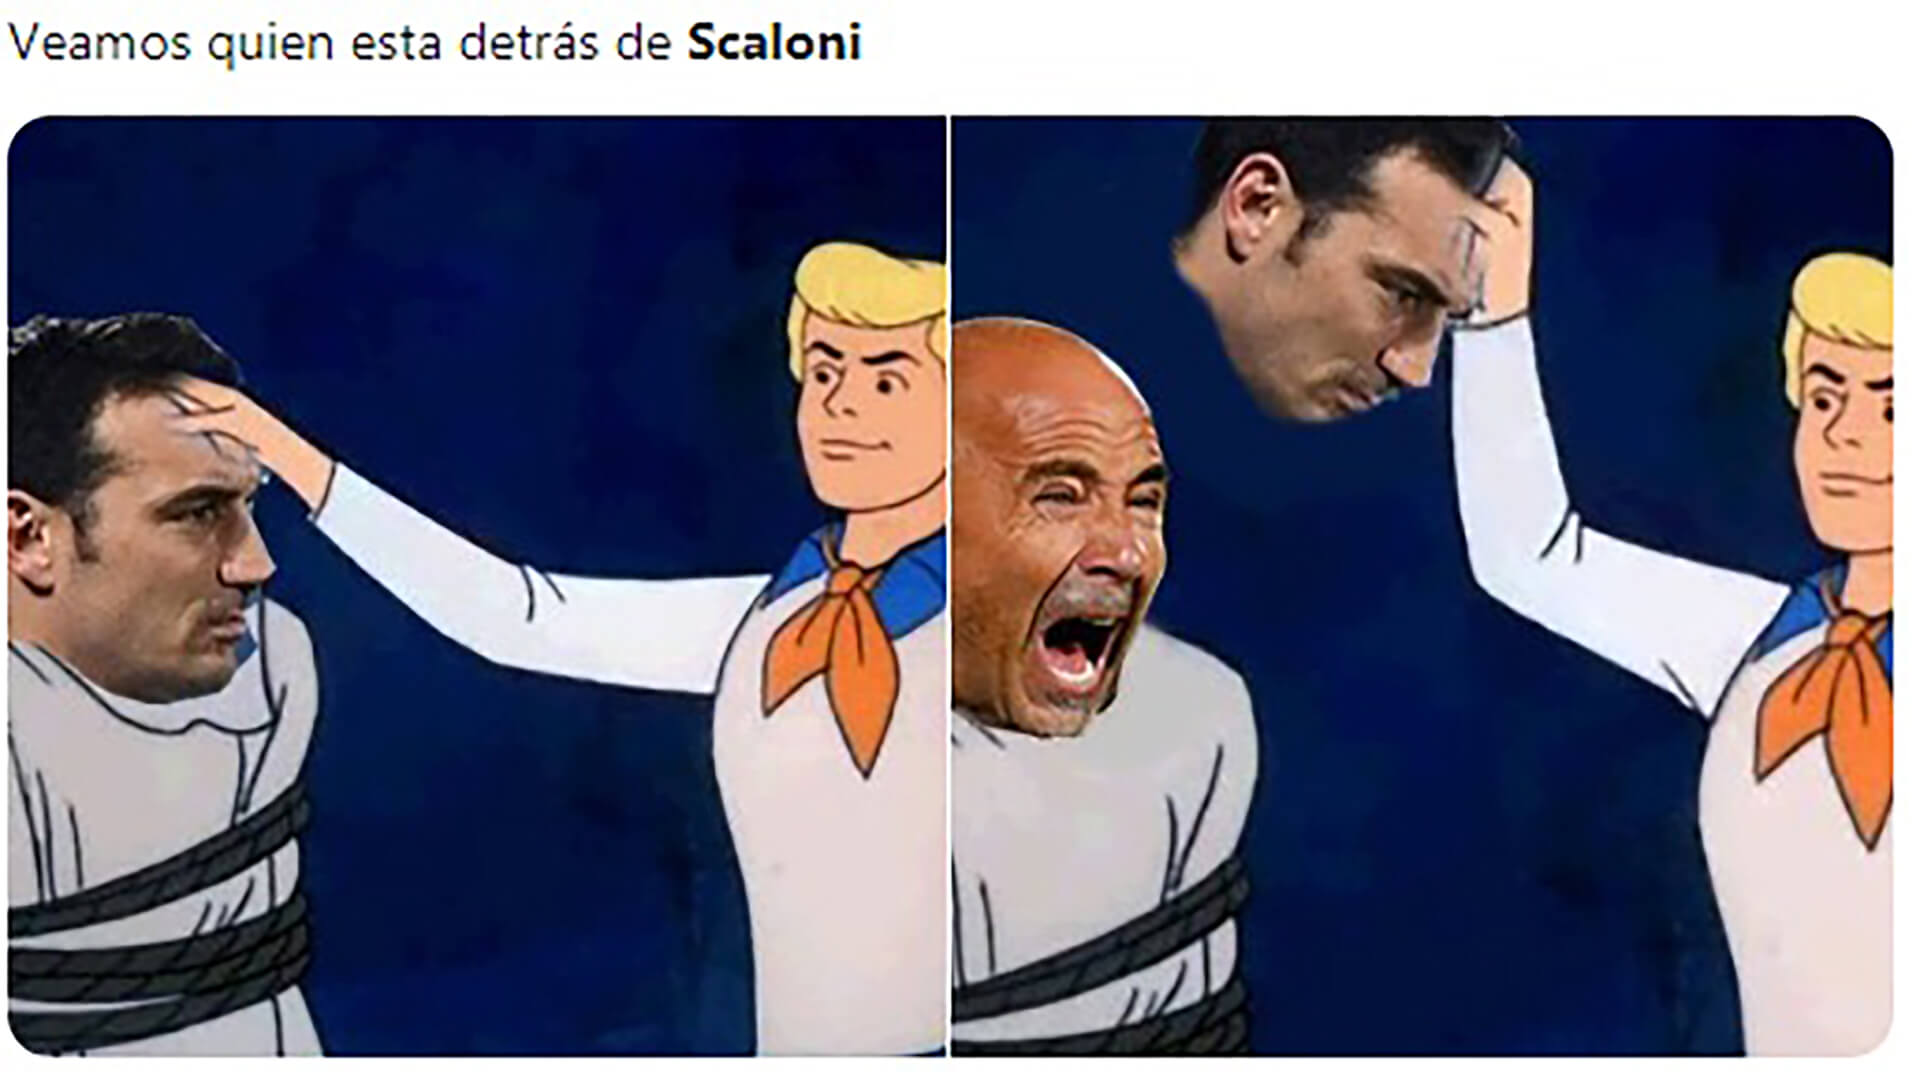 Scaloni generaba tantas dudas como Sampaoli, anterior técnico de la selección.